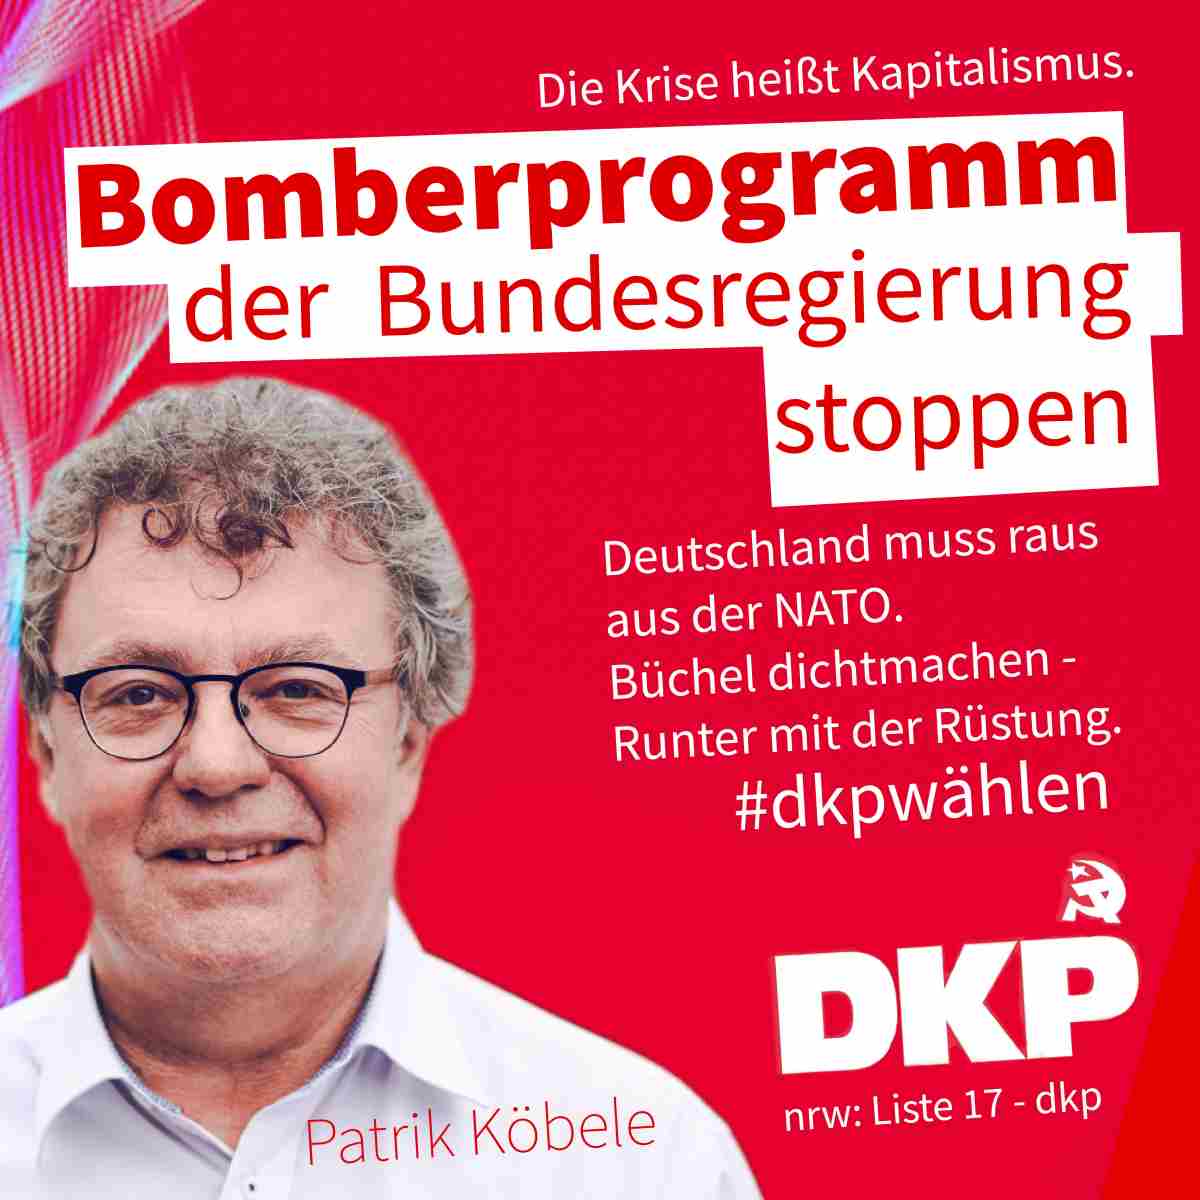 AA4B9EA7 DB9B 4390 B088 254AEF097492 - Zwölf gute Gründe, DKP zu wählen - Bundestagswahl, DKP - Hintergrund